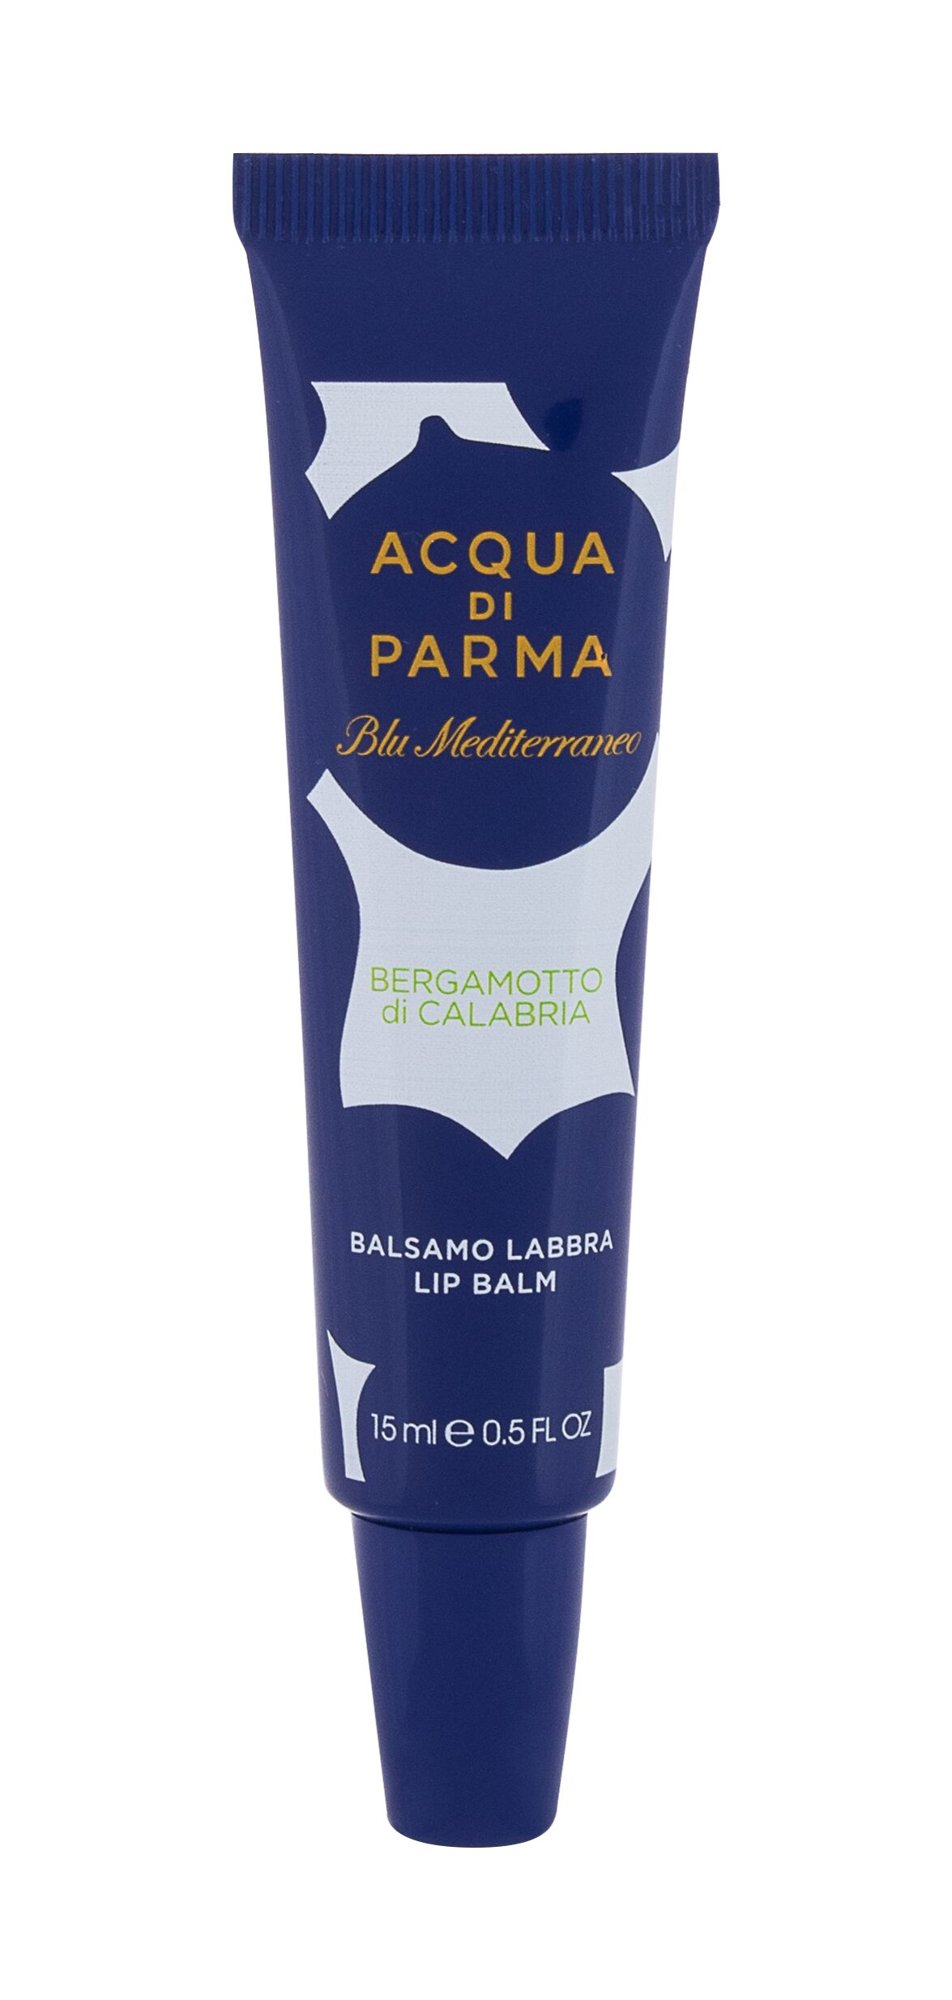 Acqua Di Parma Blu Mediterraneo Bergamotto di Calabria 15ml NIŠINIAI lūpų balzamas